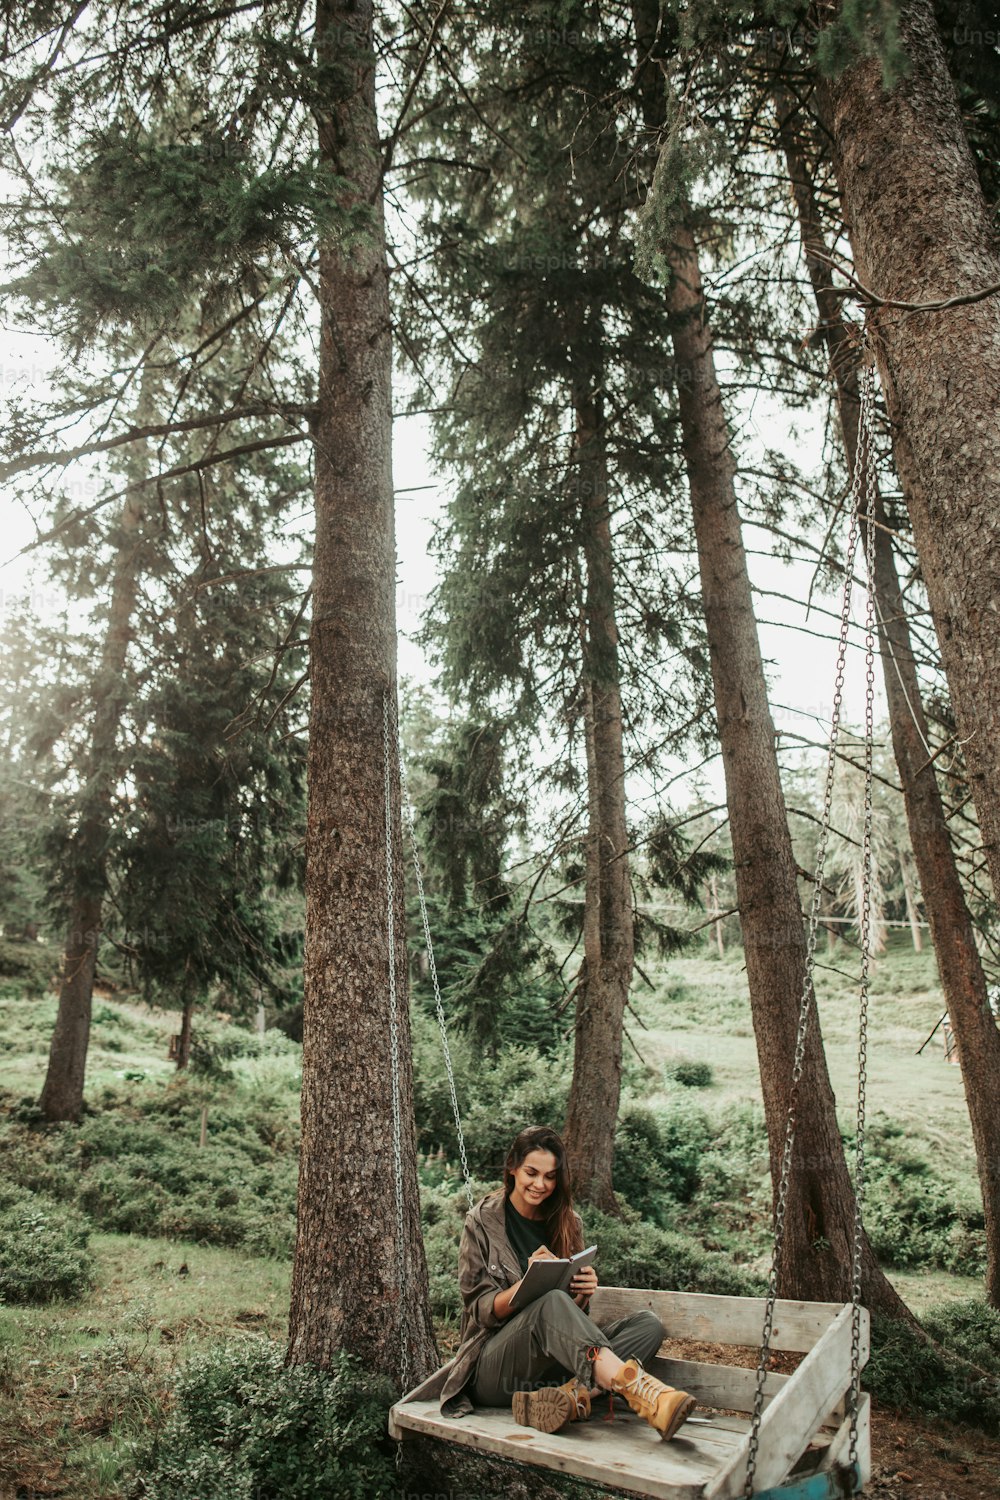 숲에서 영감을 얻는다. 노트북에 쓰고 웃고 있는 매력적인 젊은 여성의 초상화. 그녀는 키 큰 나무들로 둘러싸인 숲에서 쉬고 있다